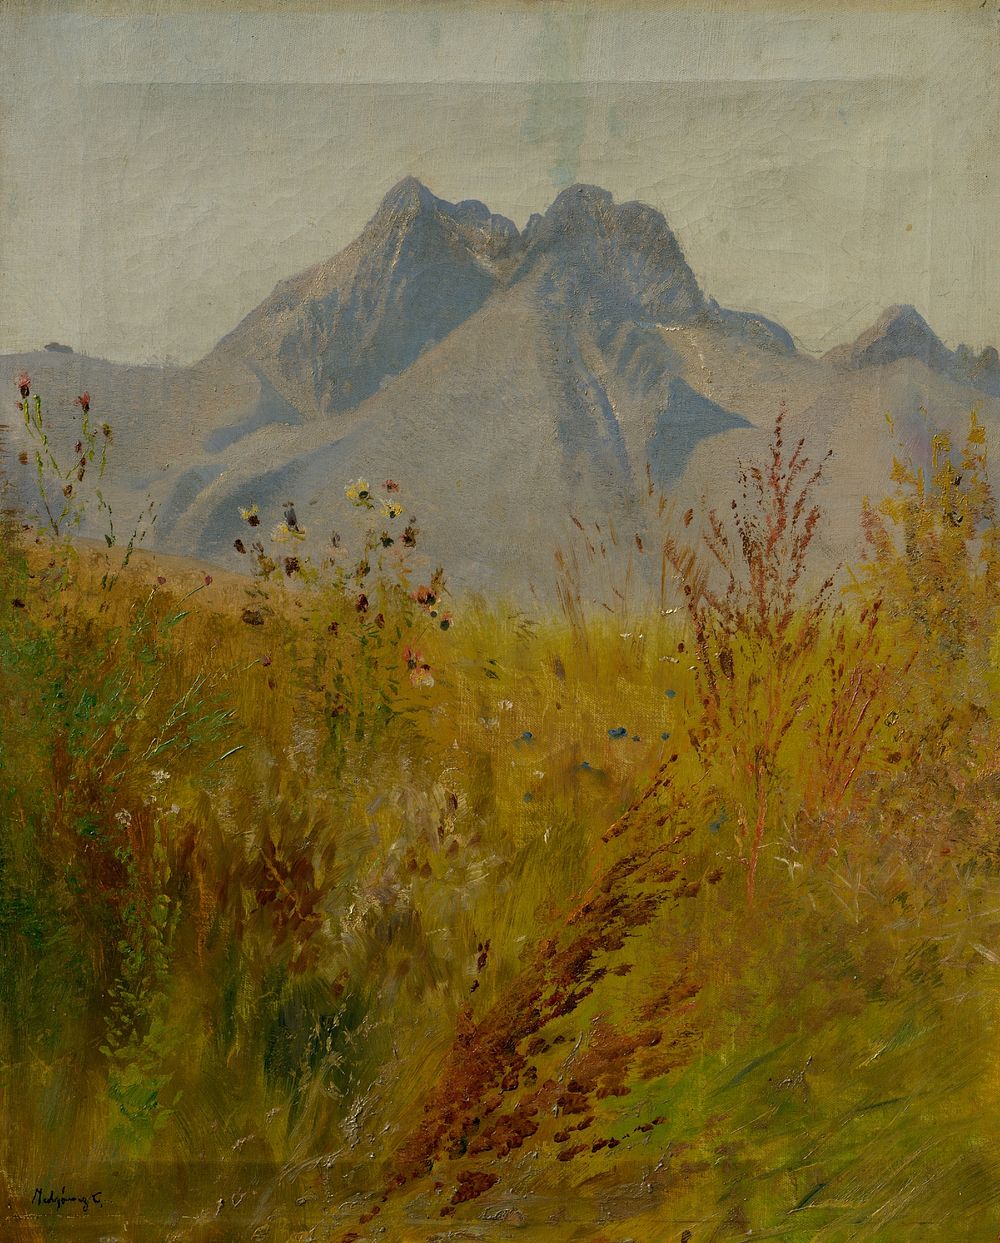 Lomnický peak by László Mednyánszky